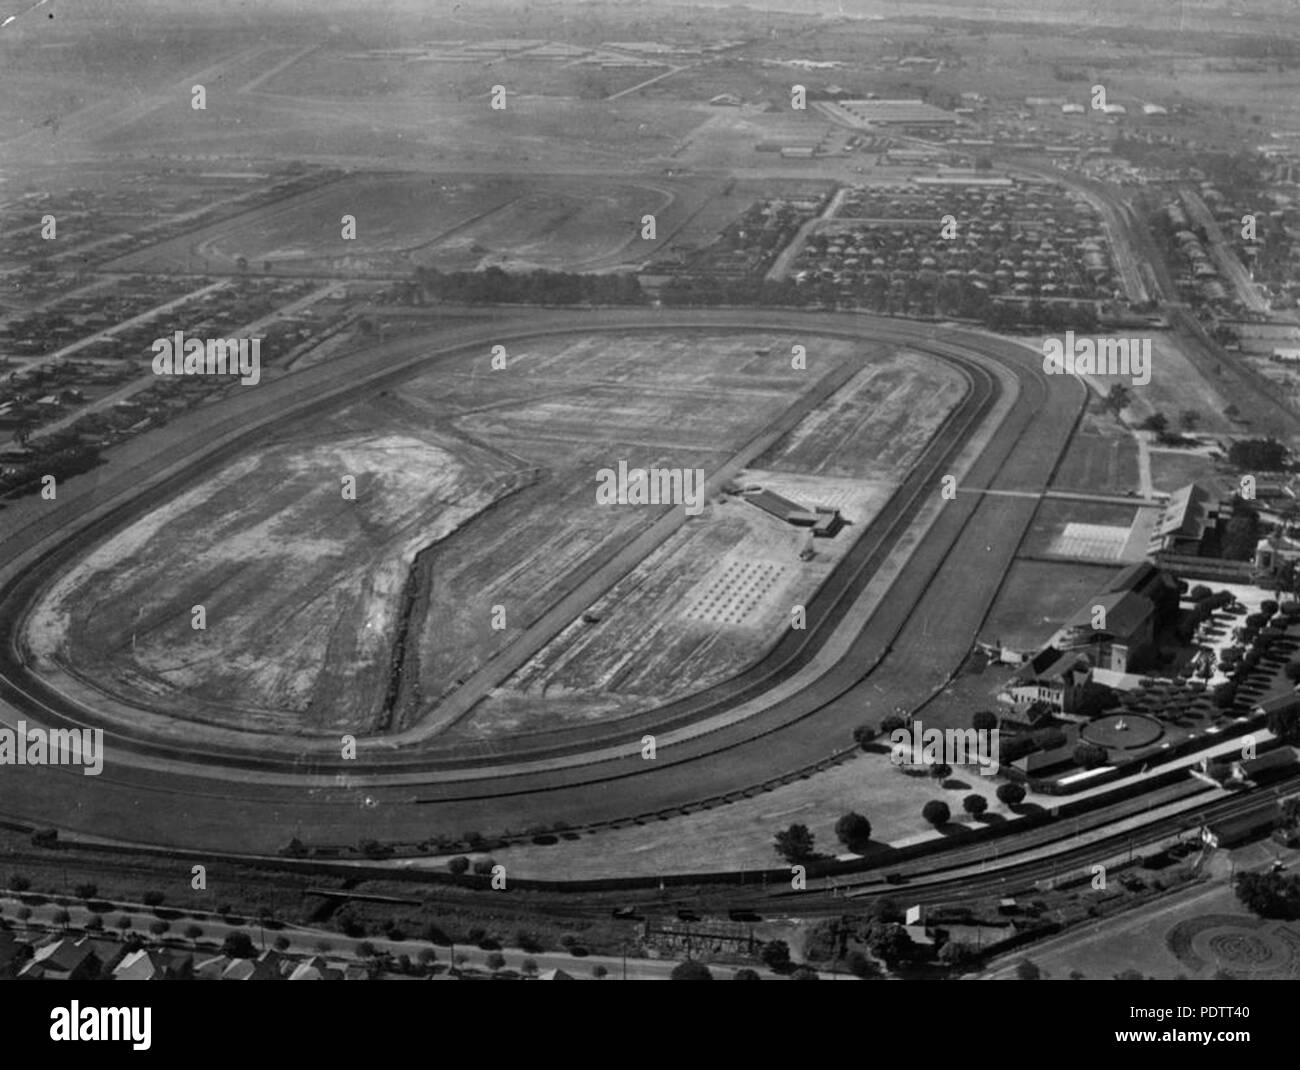 204 1 109748 StateLibQld fotografía aérea del hipódromo de Ascot en Brisbane Foto de stock